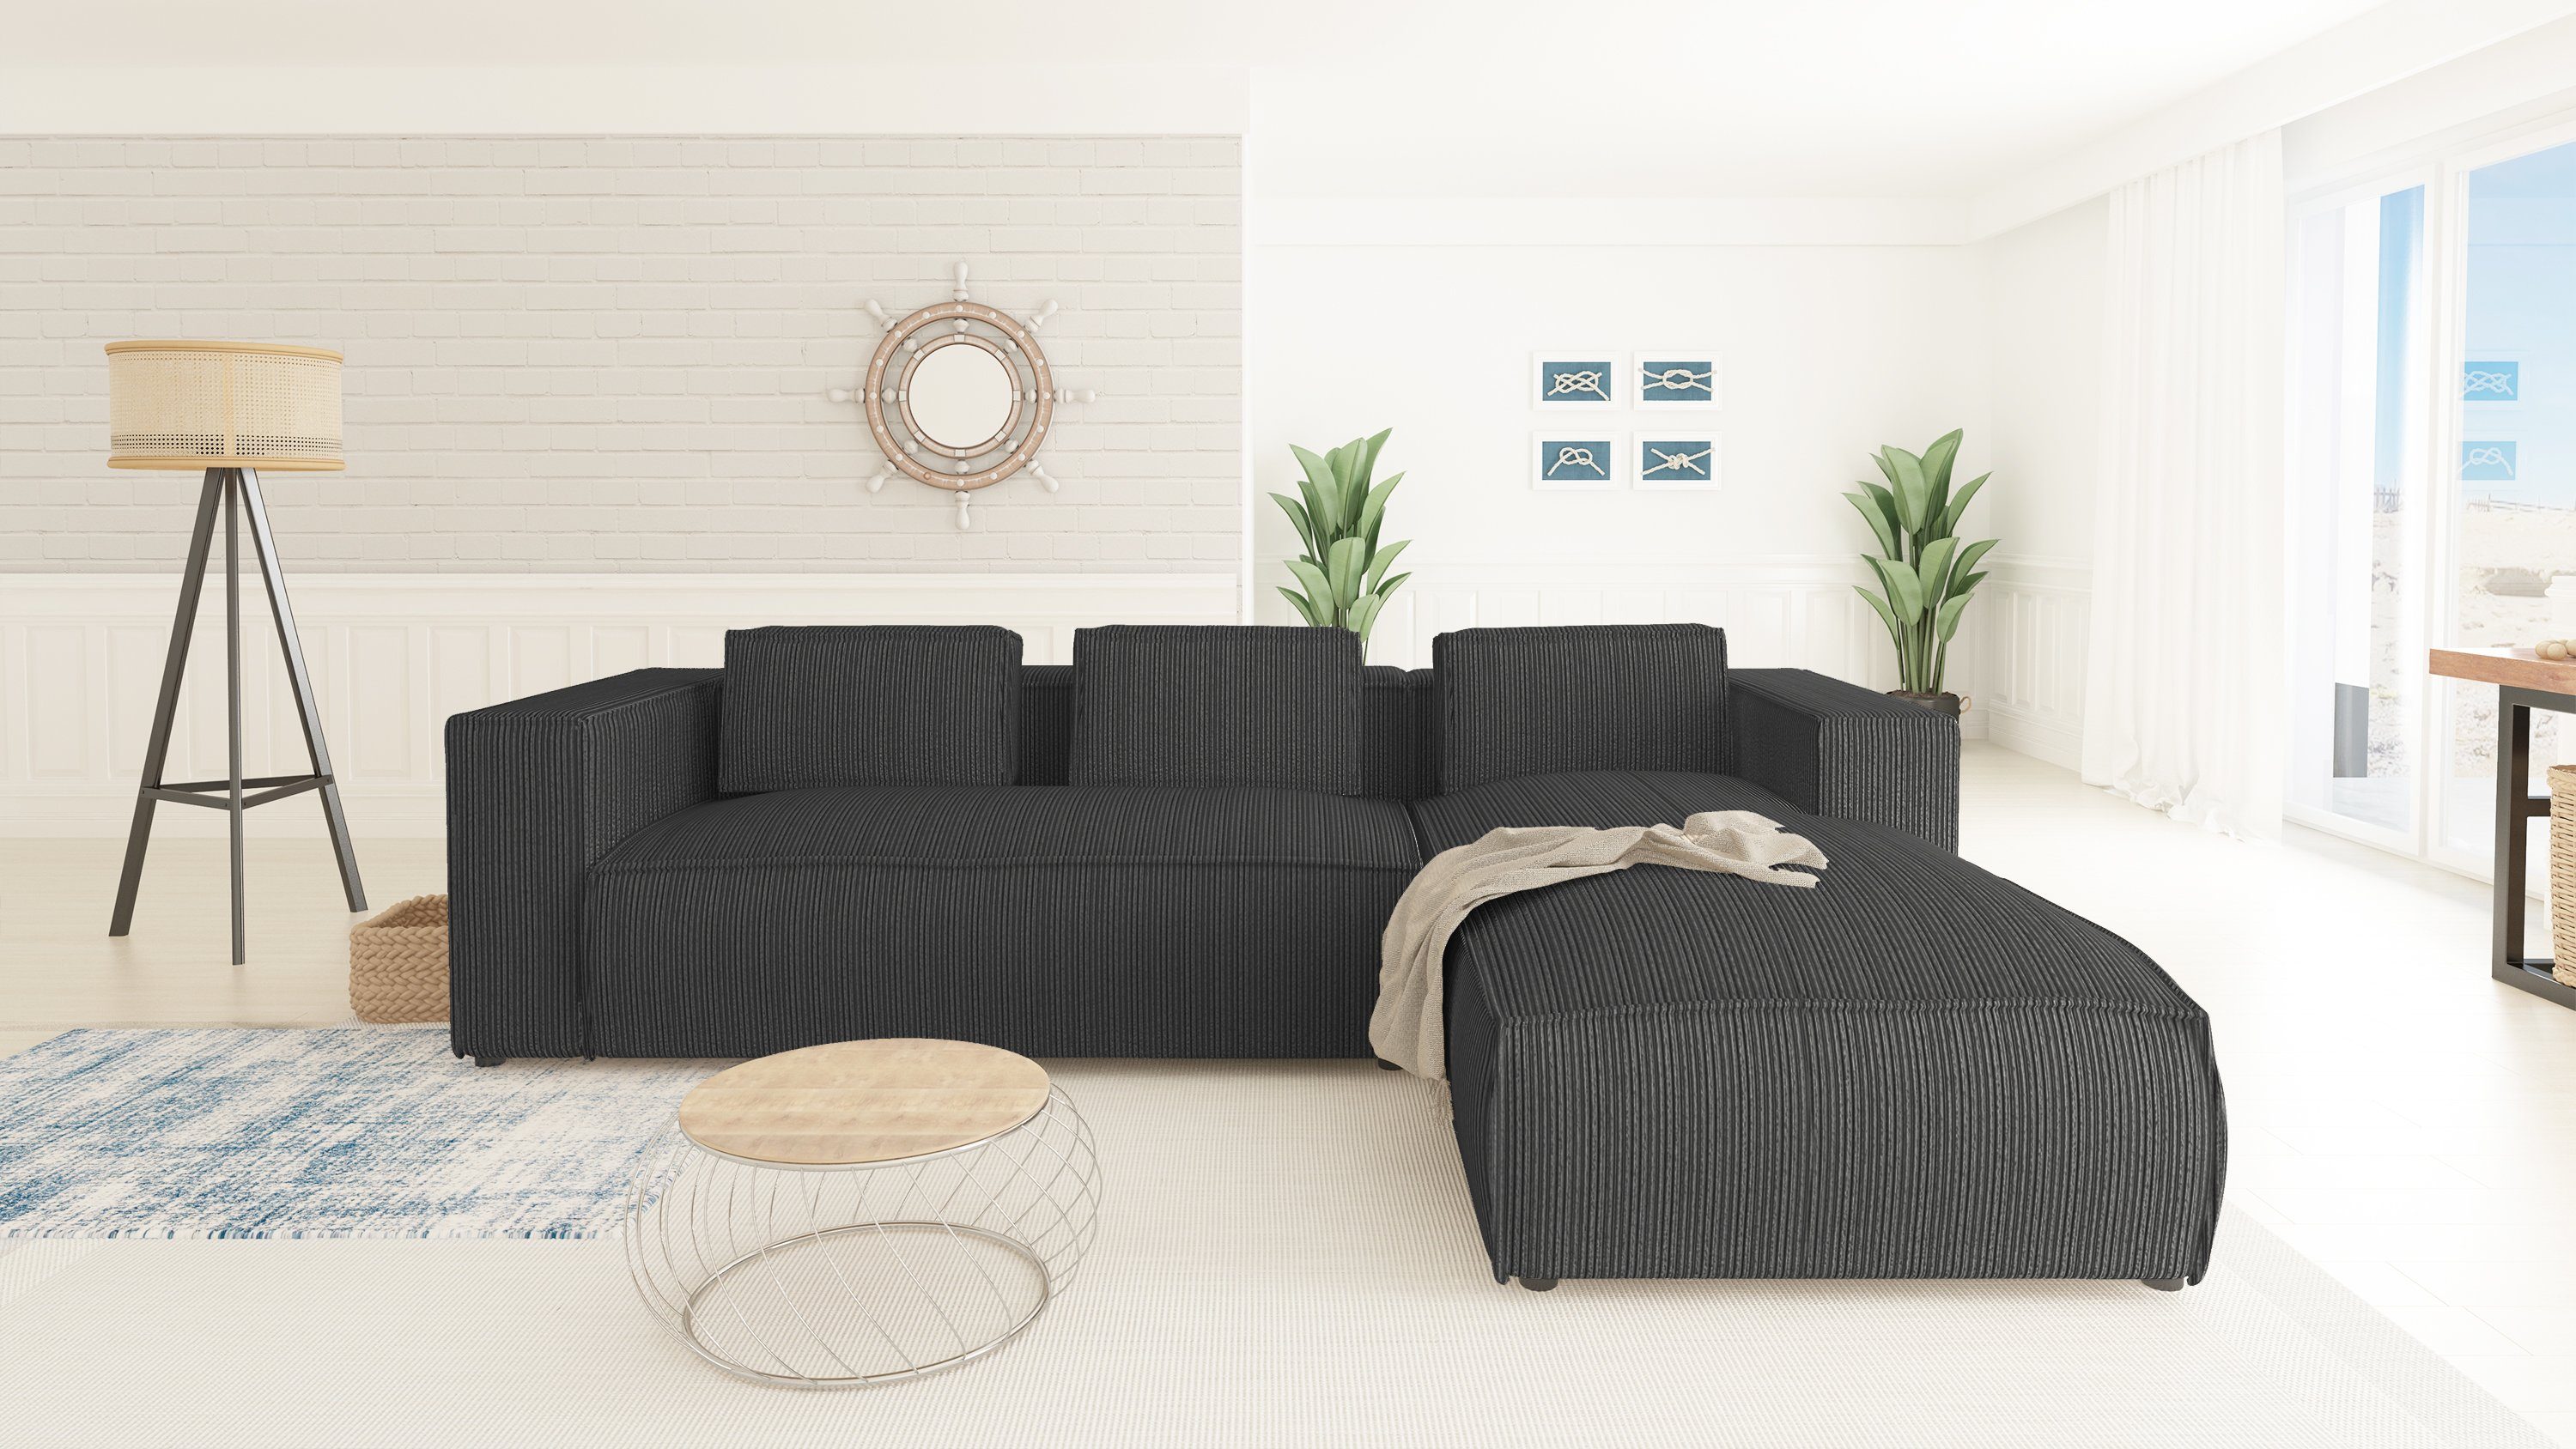 bestellbar Teile, oder mit S-Style Moderner mane links rechts Grau Wellenfederung Ecksofa Optik, Möbel in 2 Renne,